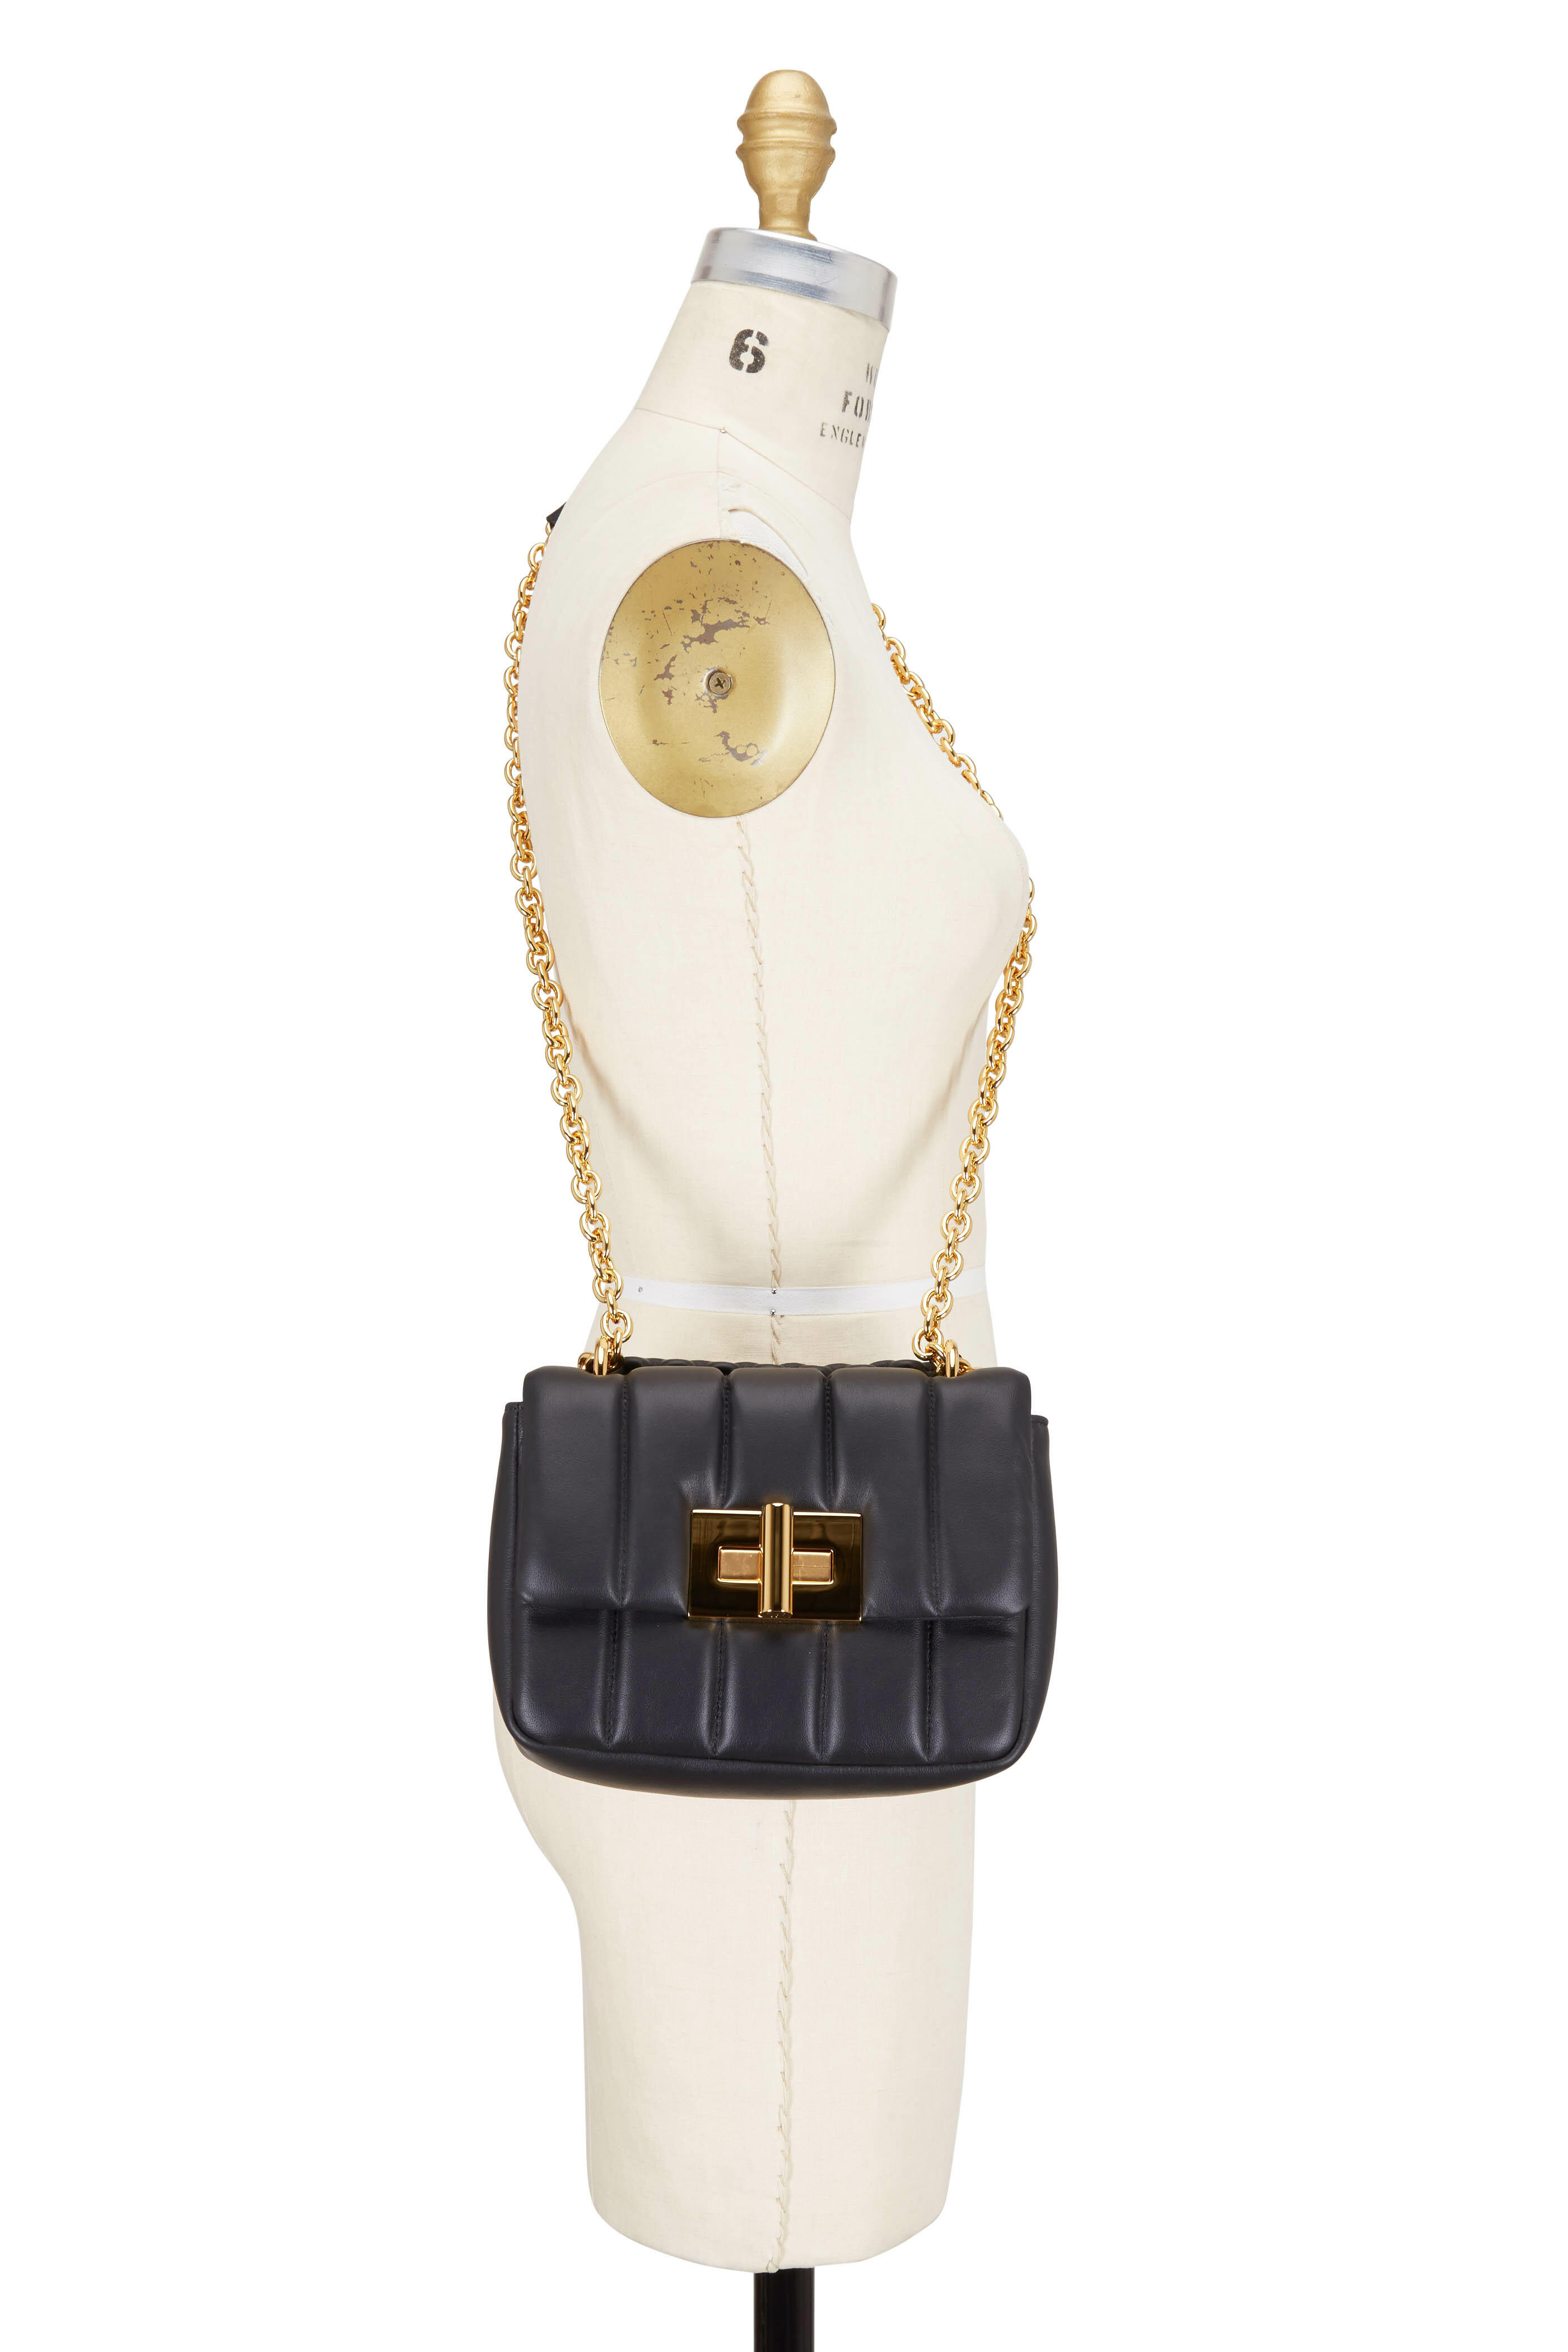 $3690 TOM FORD Natalia Small Black Leather Shoulder Bag